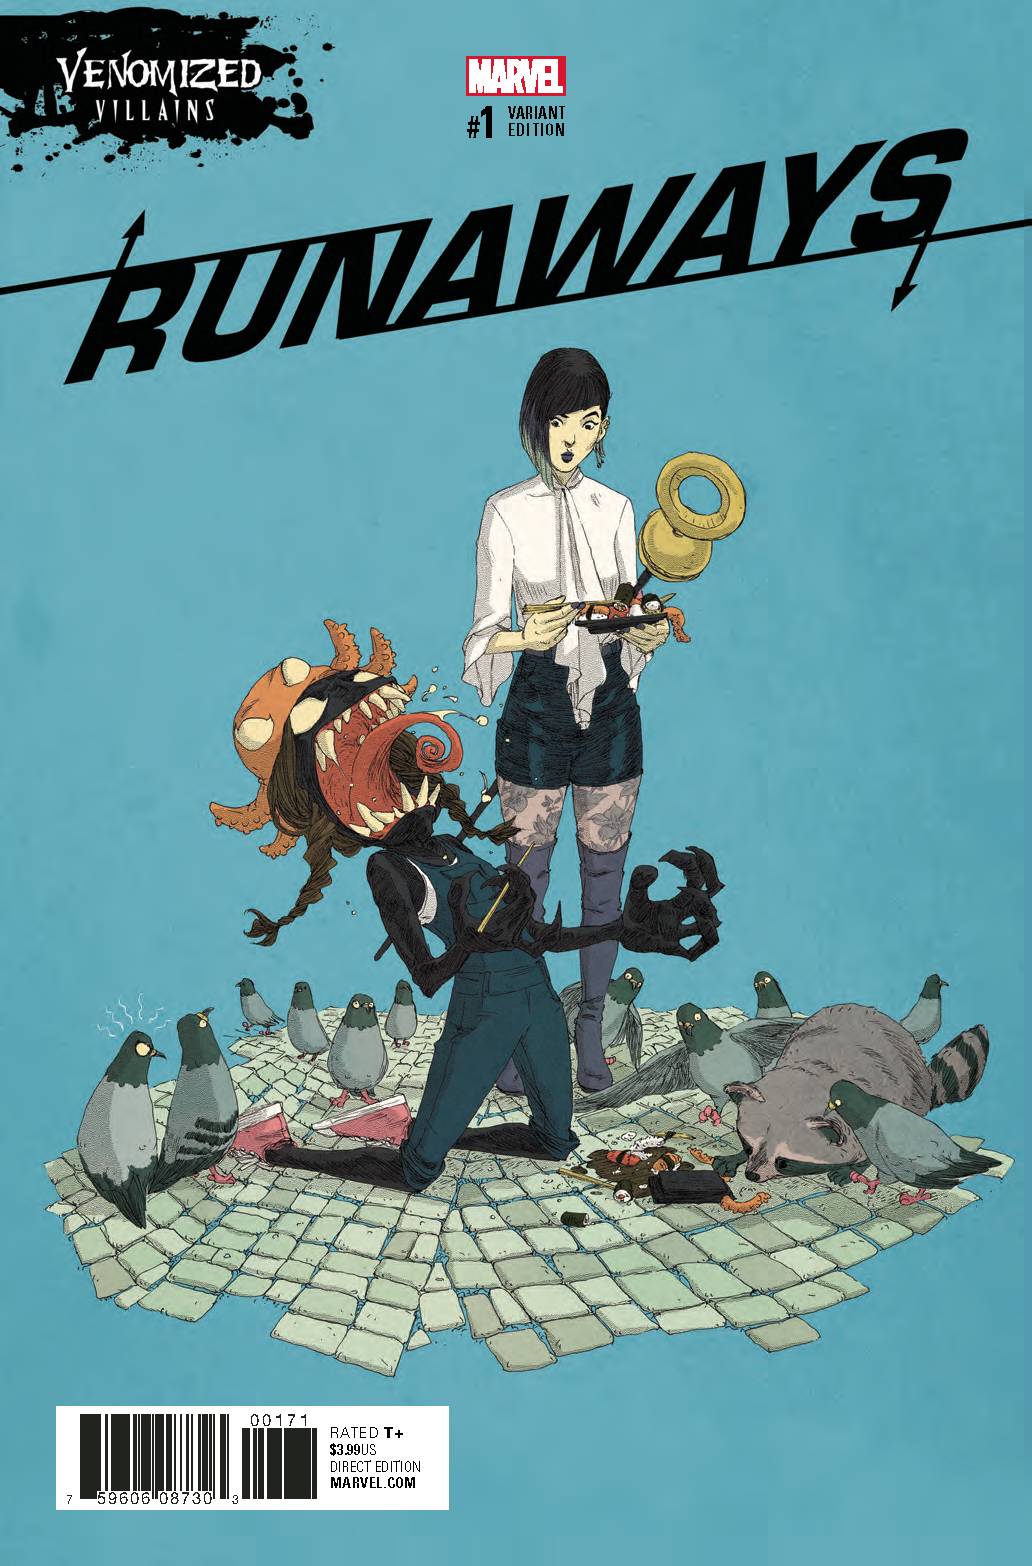 Runaways (5th Series) 1 Var F Comic Book NM